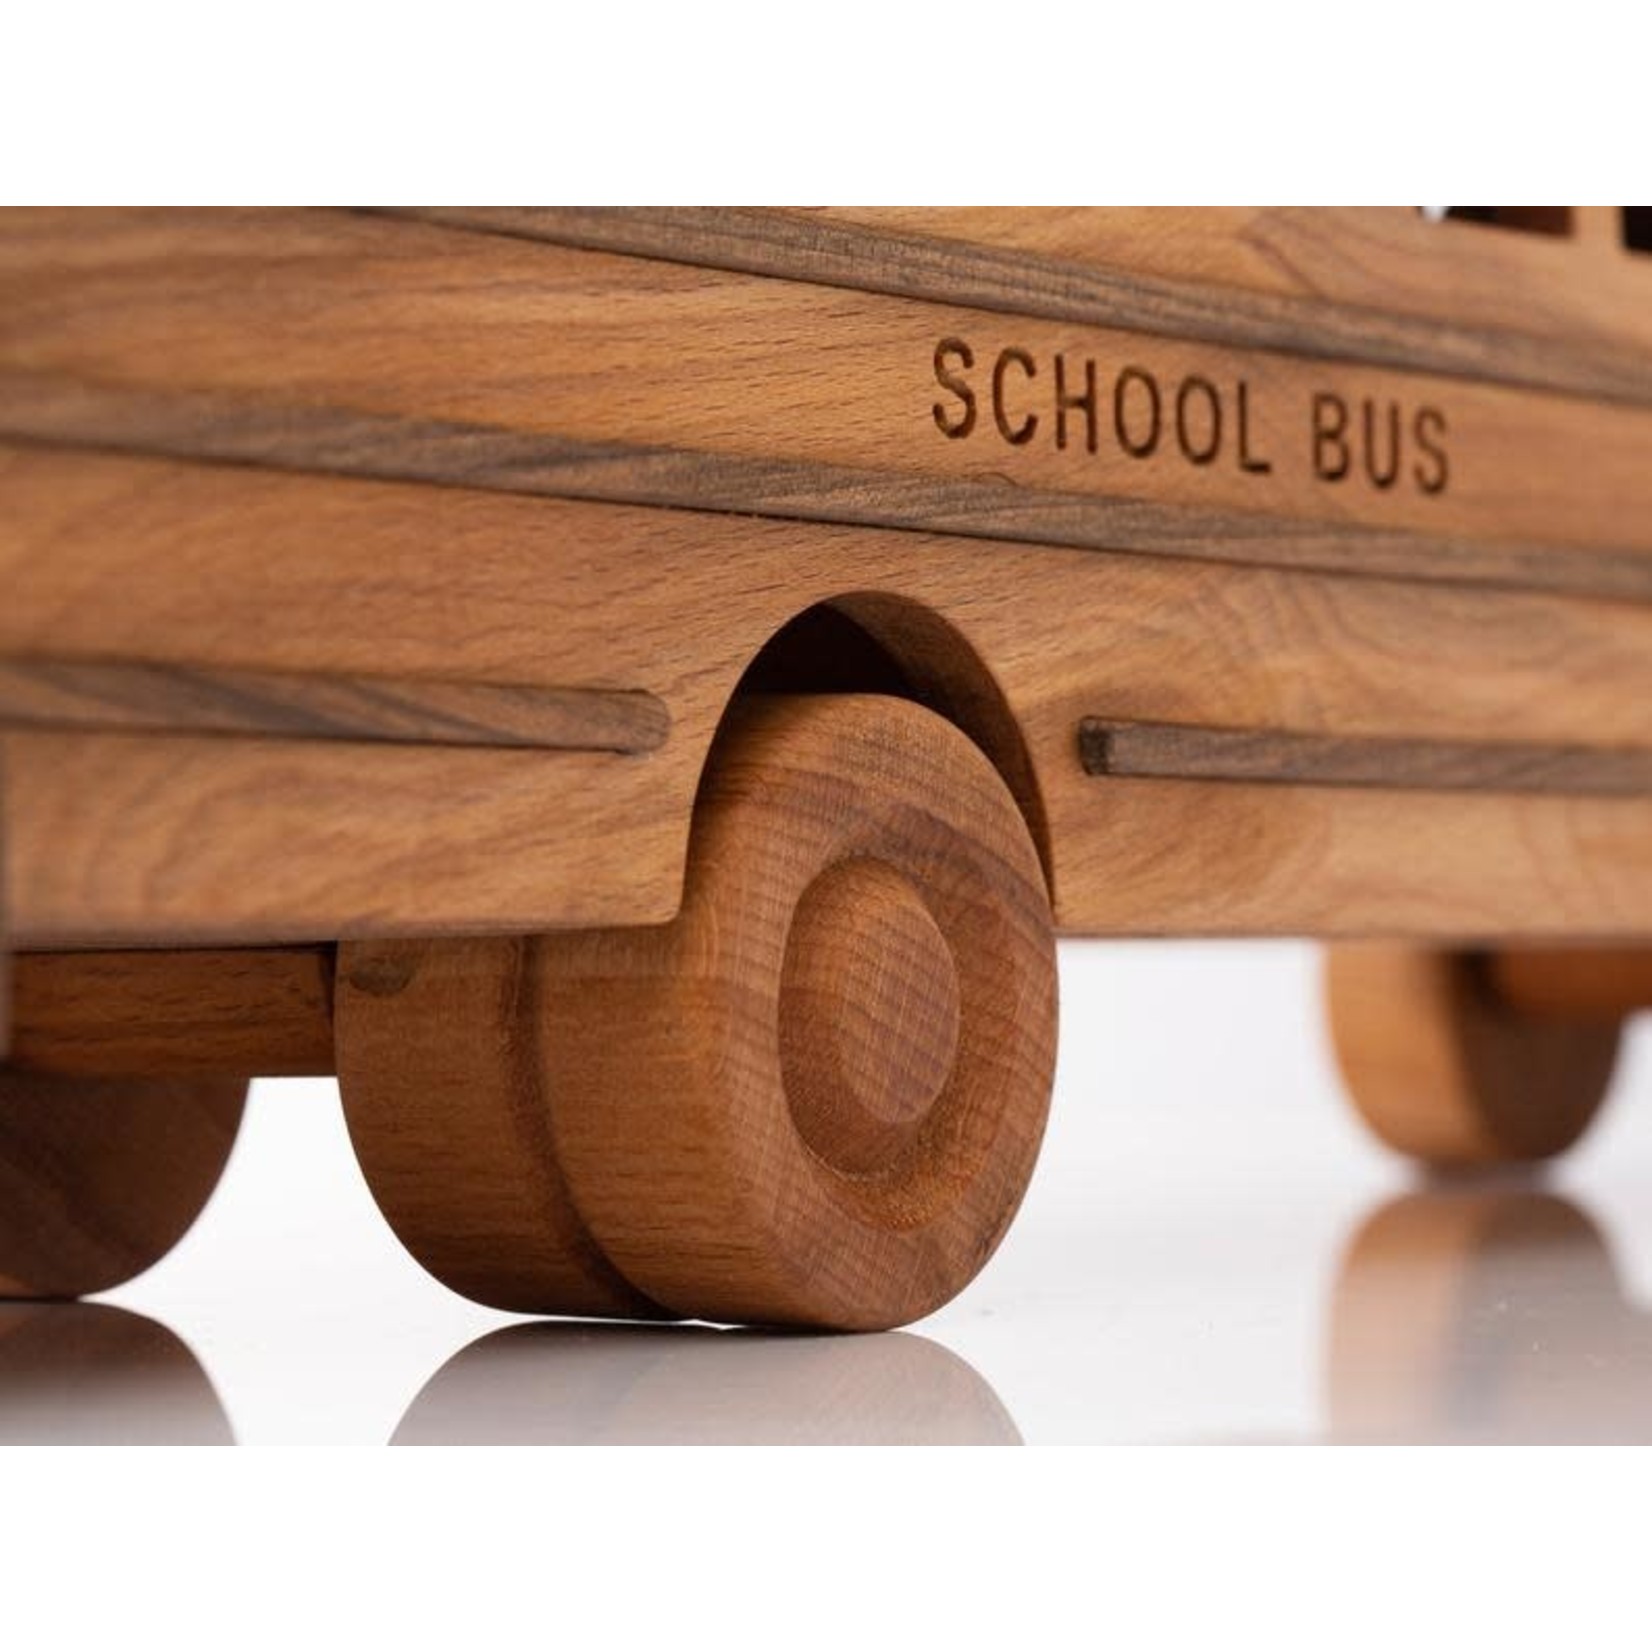 Wooden Toy School Bus